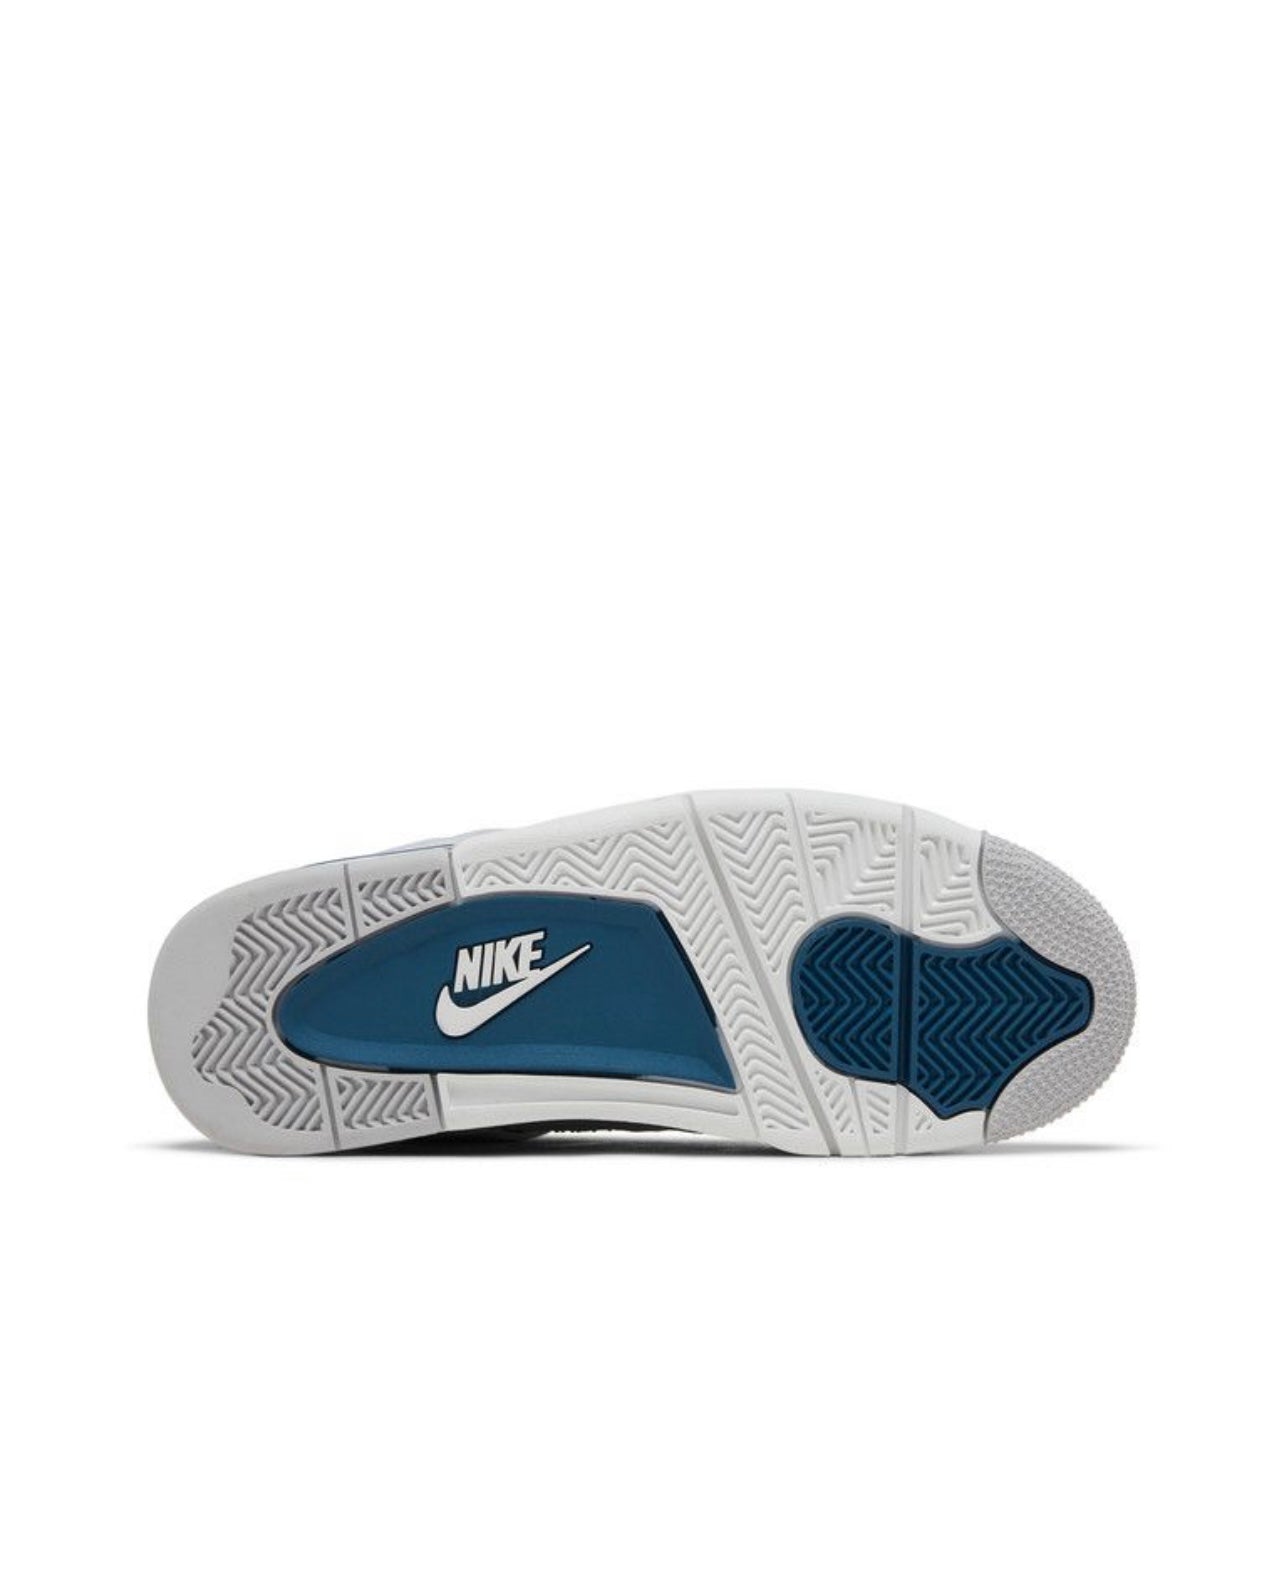 Nike Air Jordan 4 Retro "Azul Industrial" 